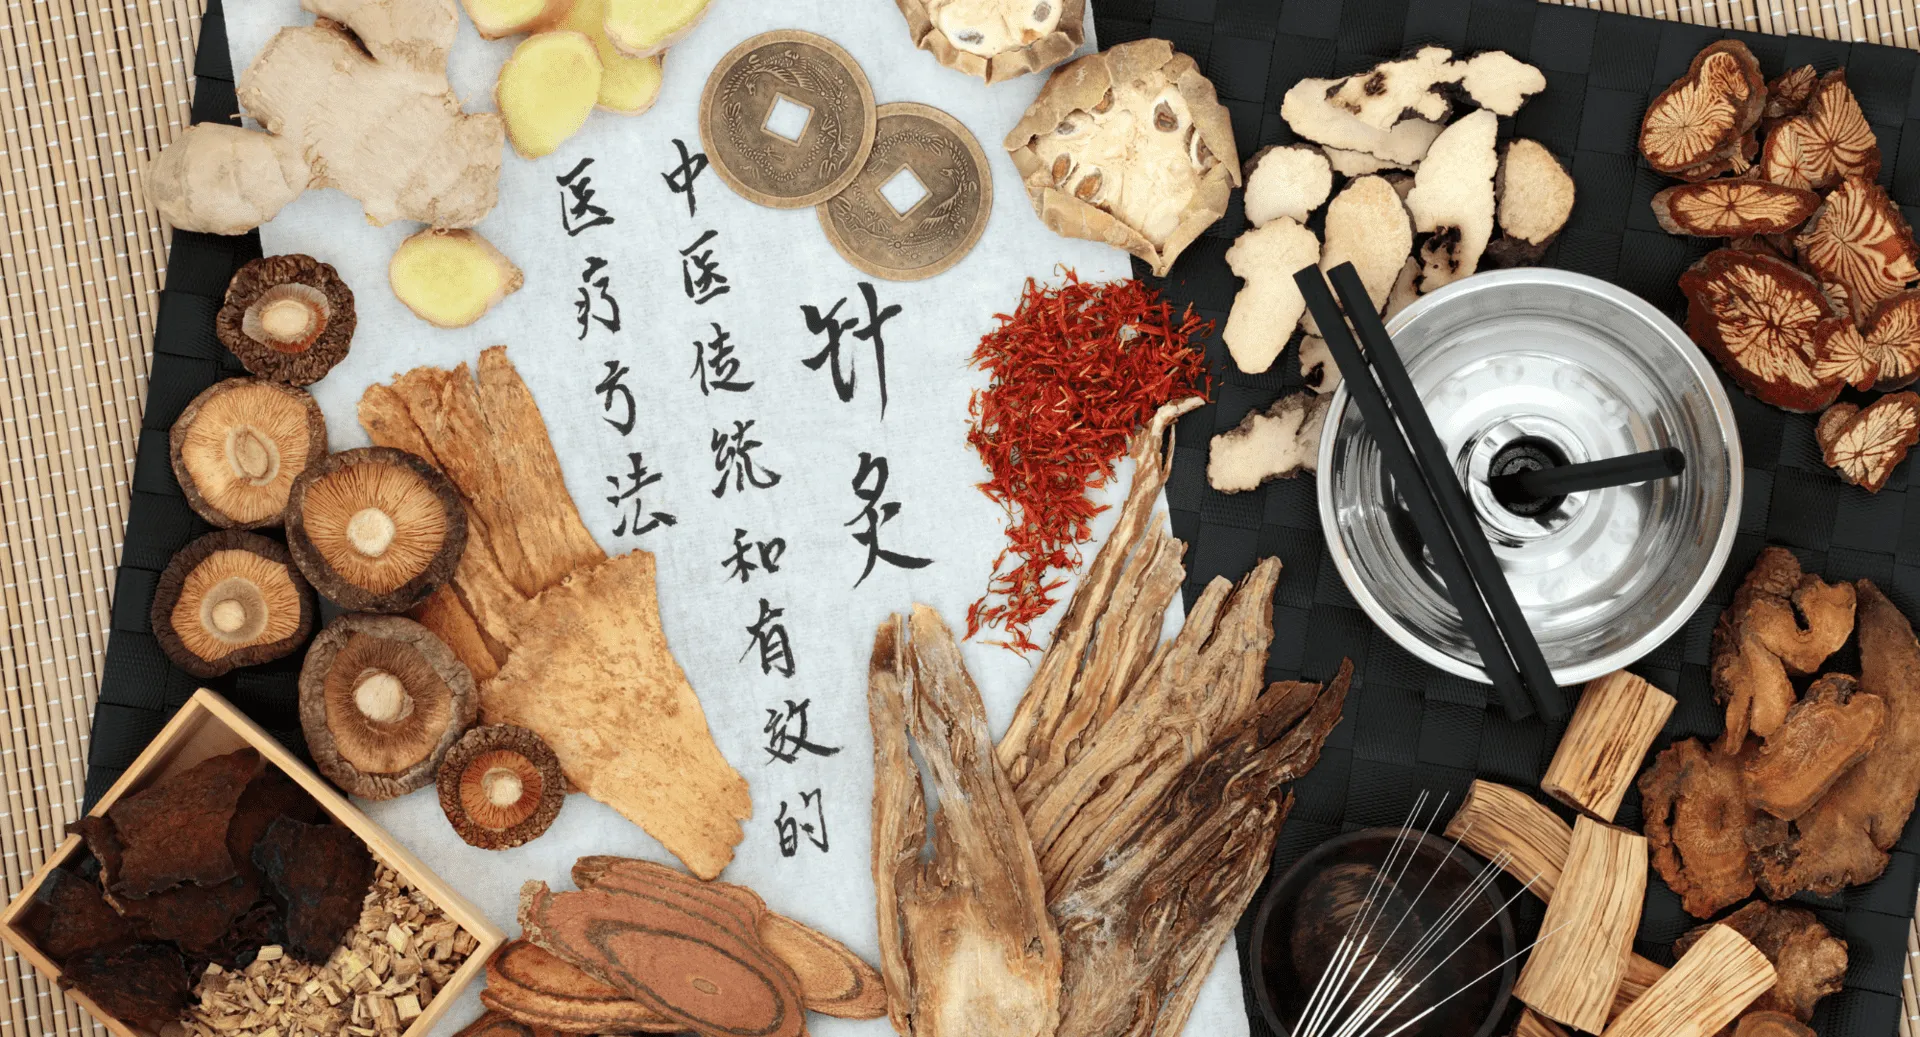 על הרפואה הסינית לאזן בין הגוף לנפש שיטת טיפול עתיקה